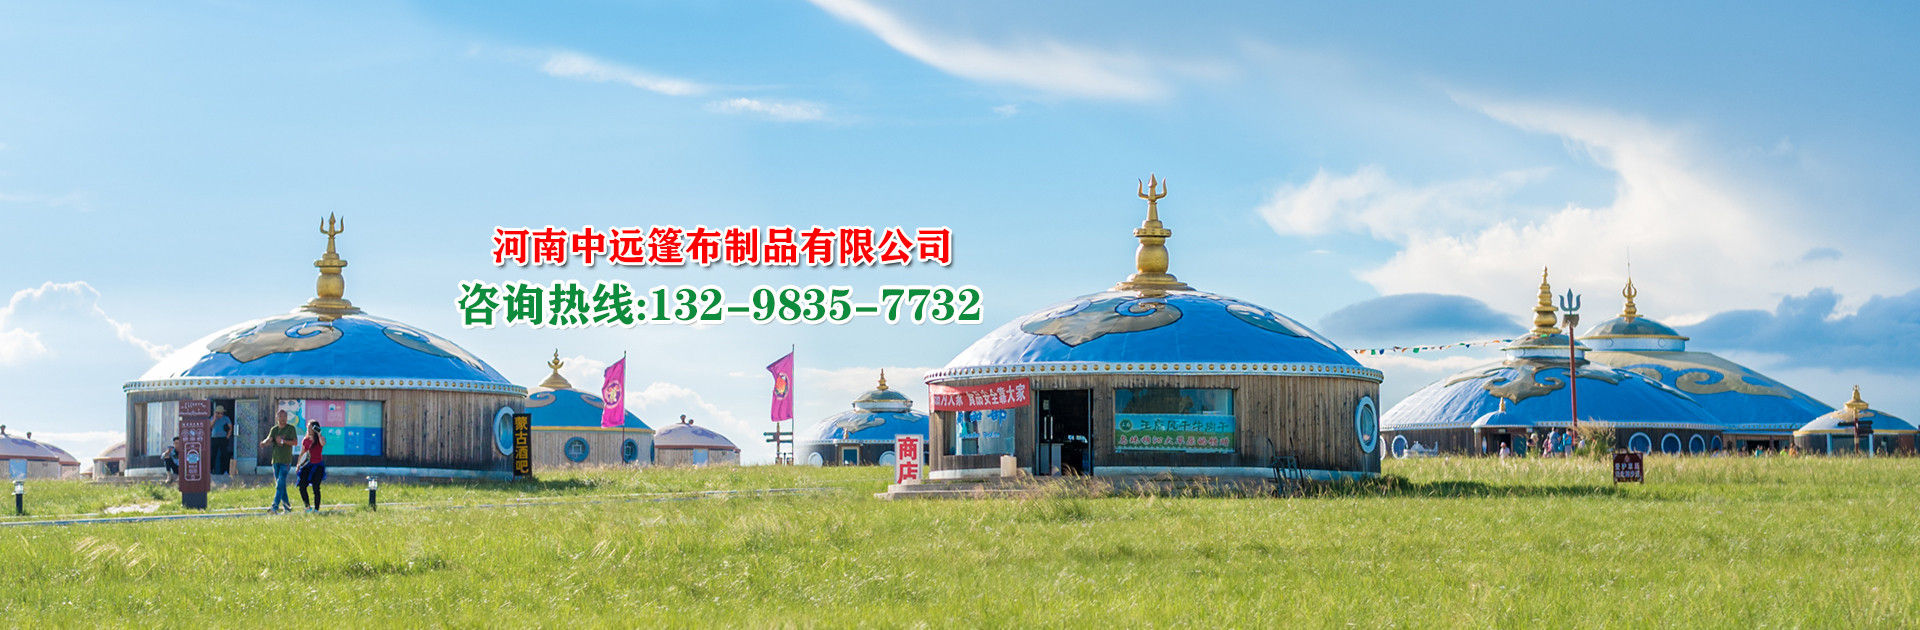 蒙古包文化